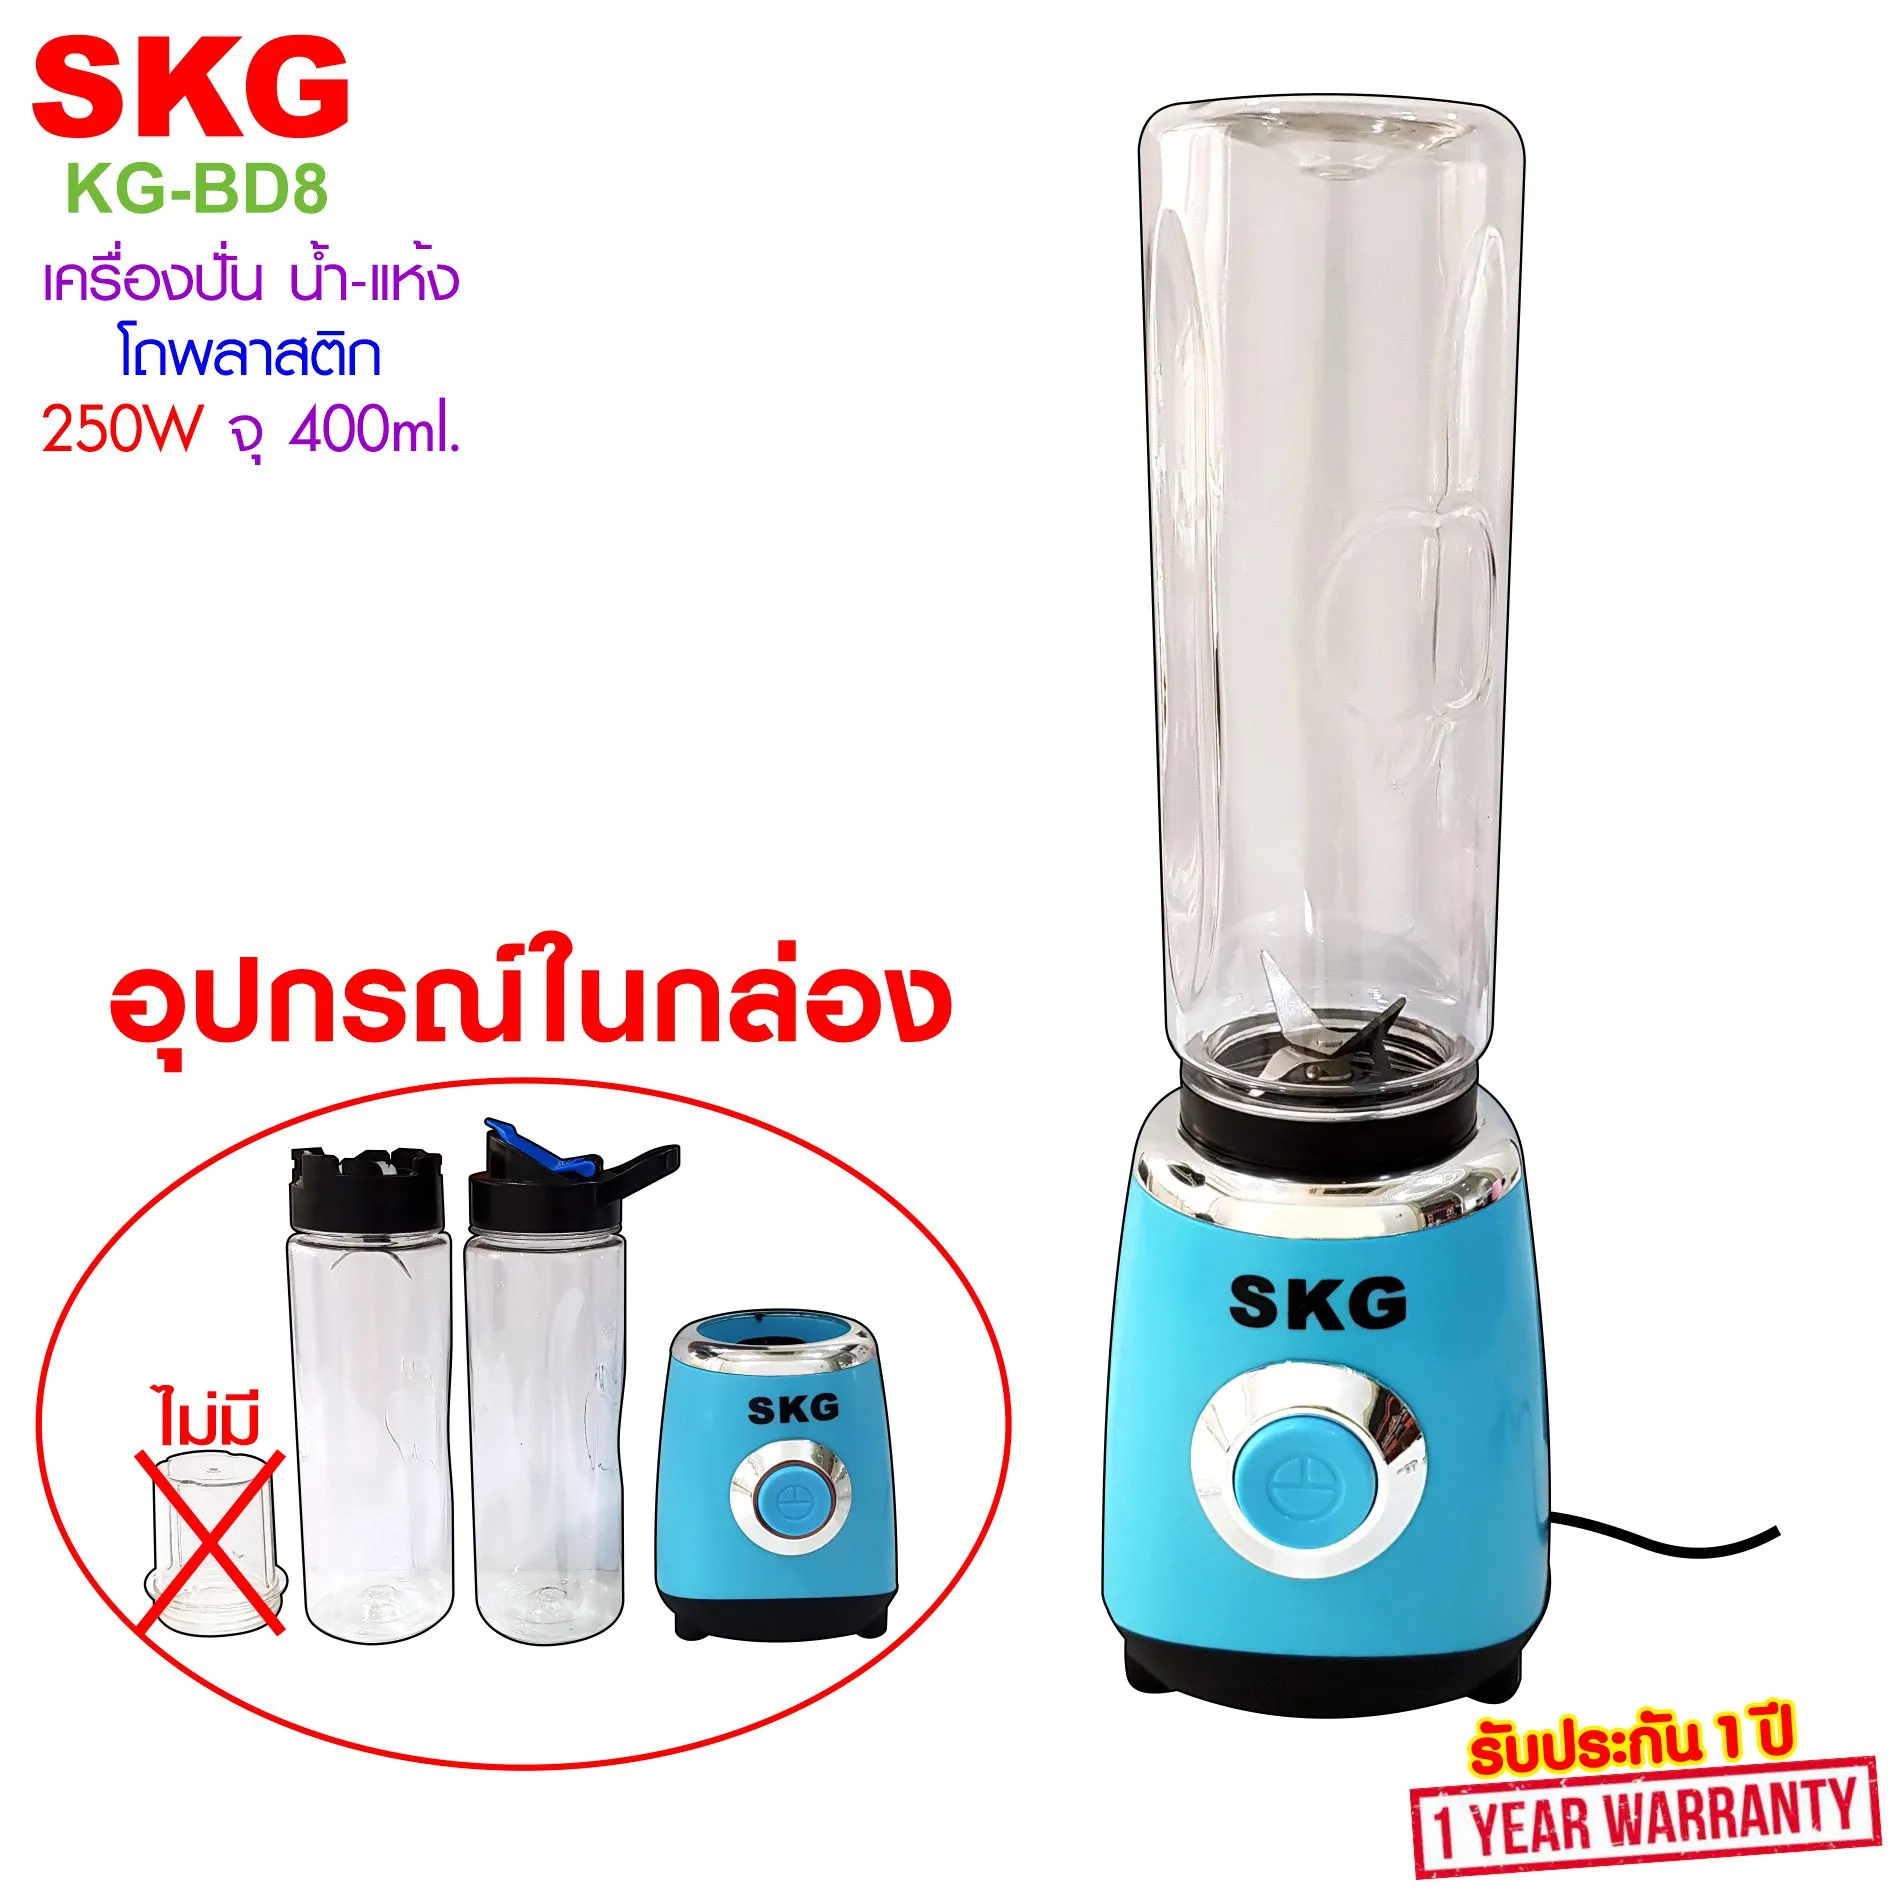 SKG เครื่องปั่น น้ำผลไม้ สมูทตี้ 2โถพลาสติก (400 ml.) รุ่น KG-BD8